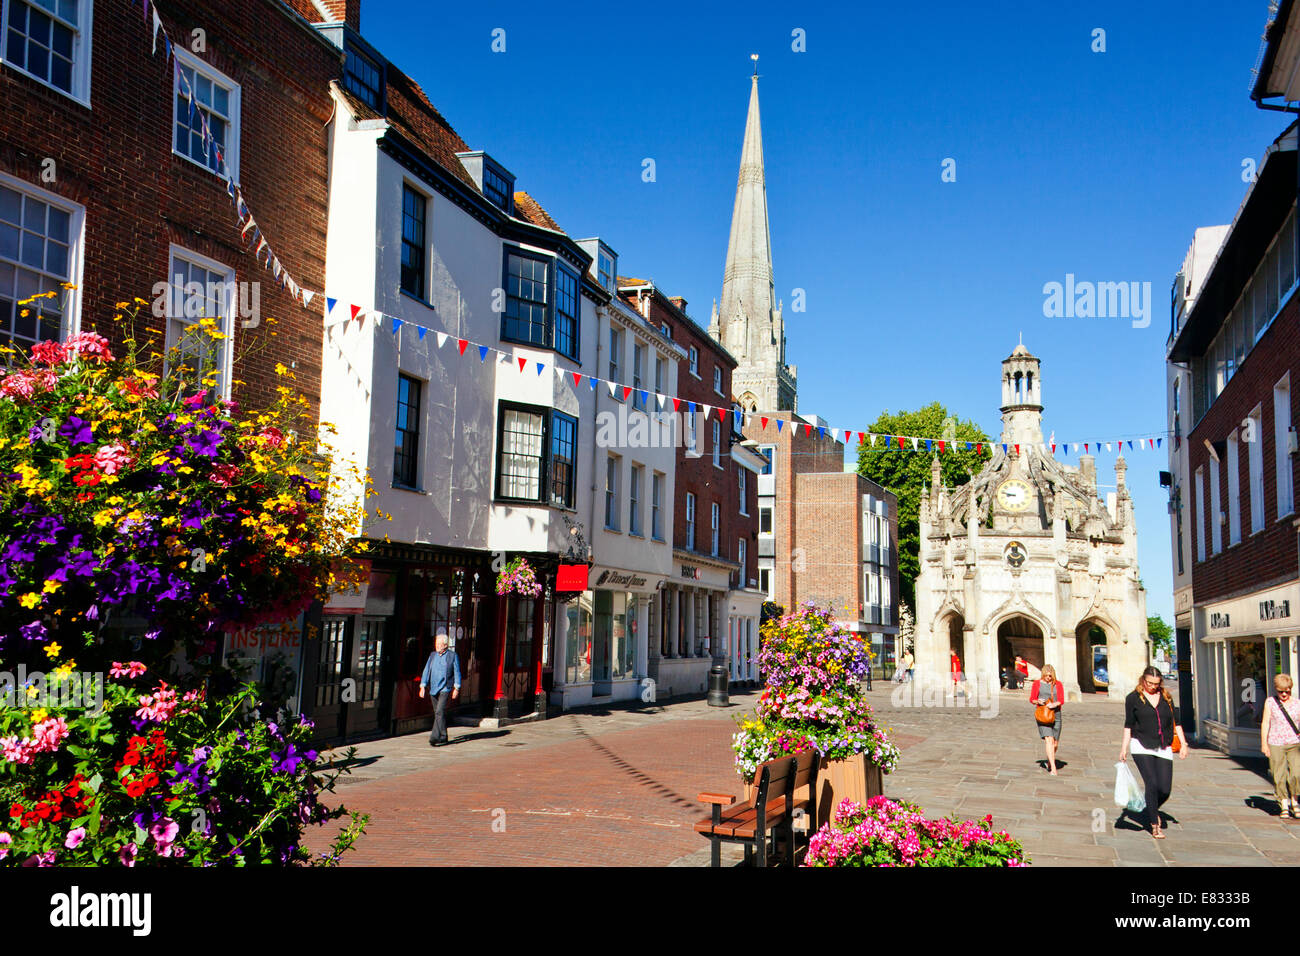 Le marché de la croix de pierre octogonale en 1503 Chichester, West Sussex, England, UK Banque D'Images